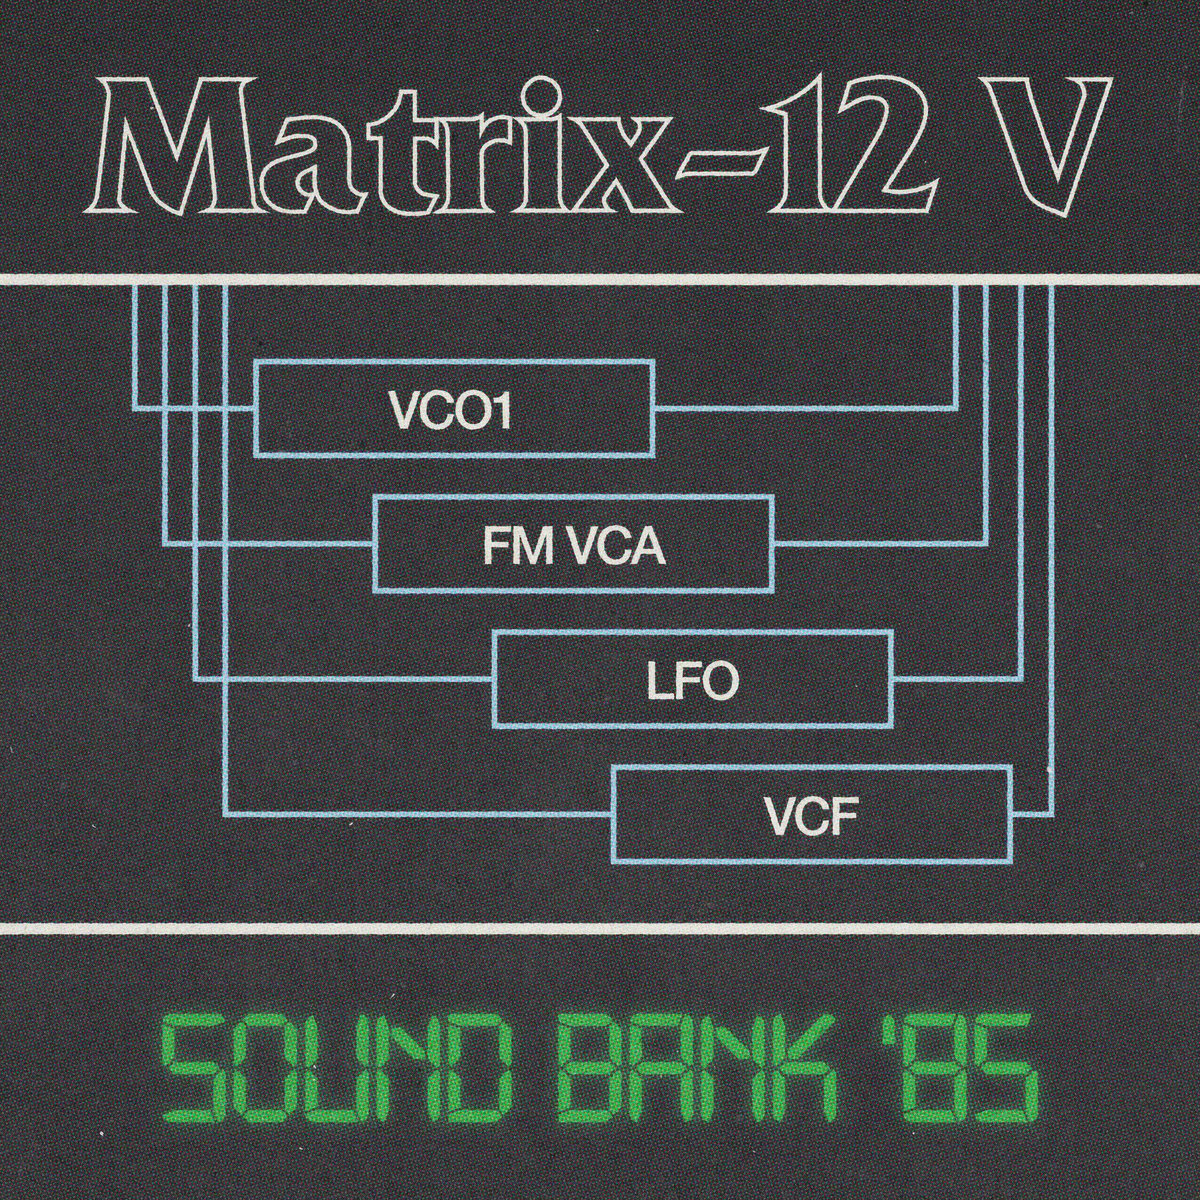 Image of Arturia Matrix-12 V - Sound Bank '85